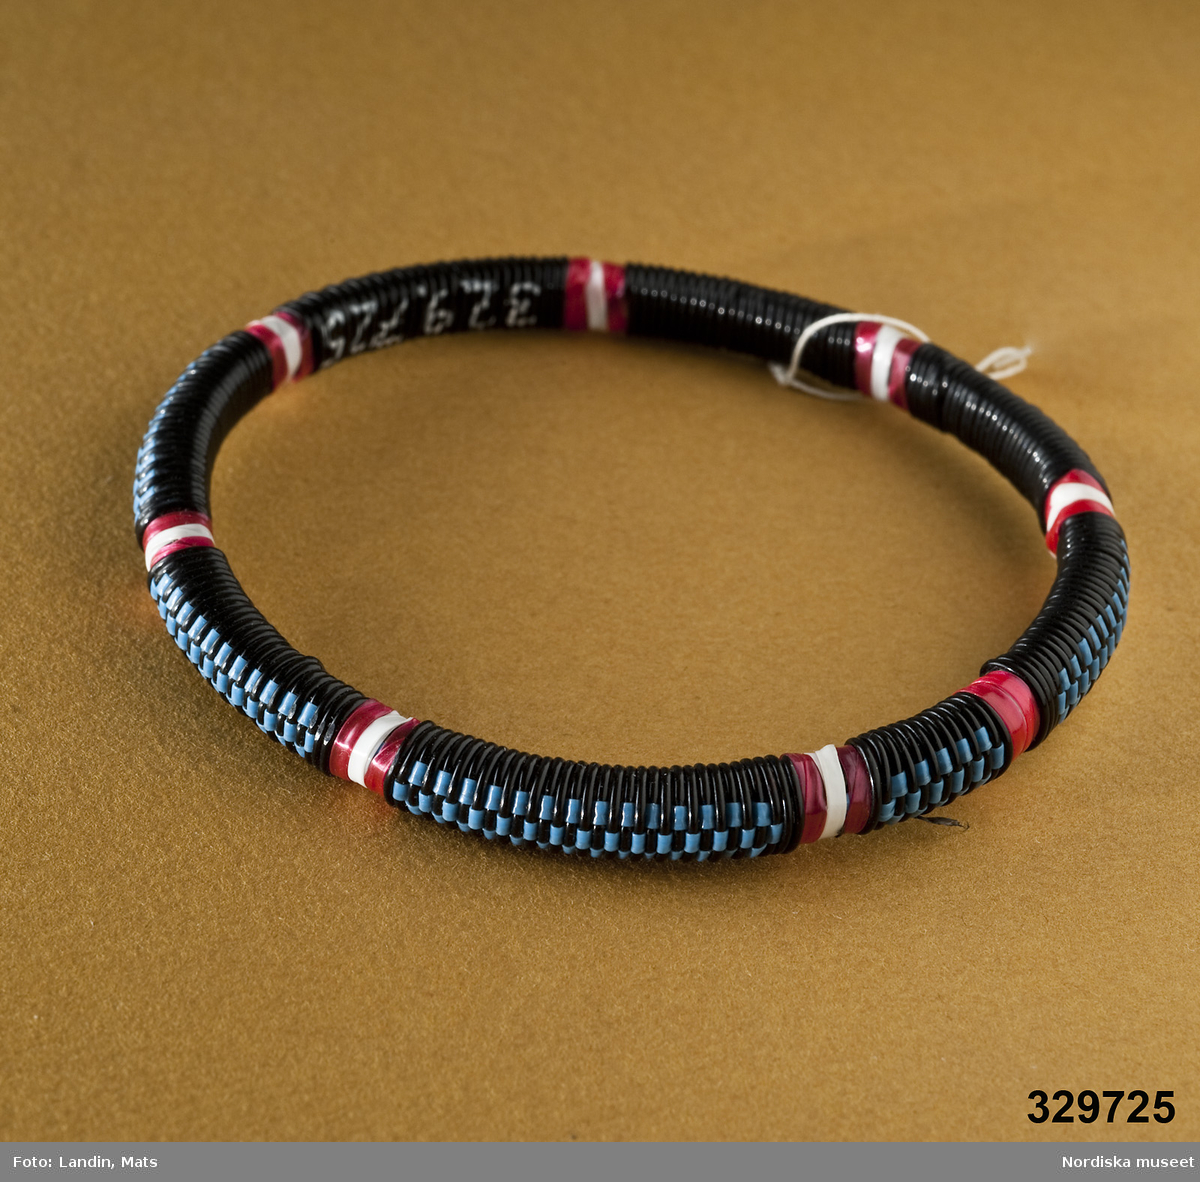 Runt armband med mönster vävt av tunna plastband. Afrikanska influenser.
/Zingoalla Rosenqvist 2009-02-05